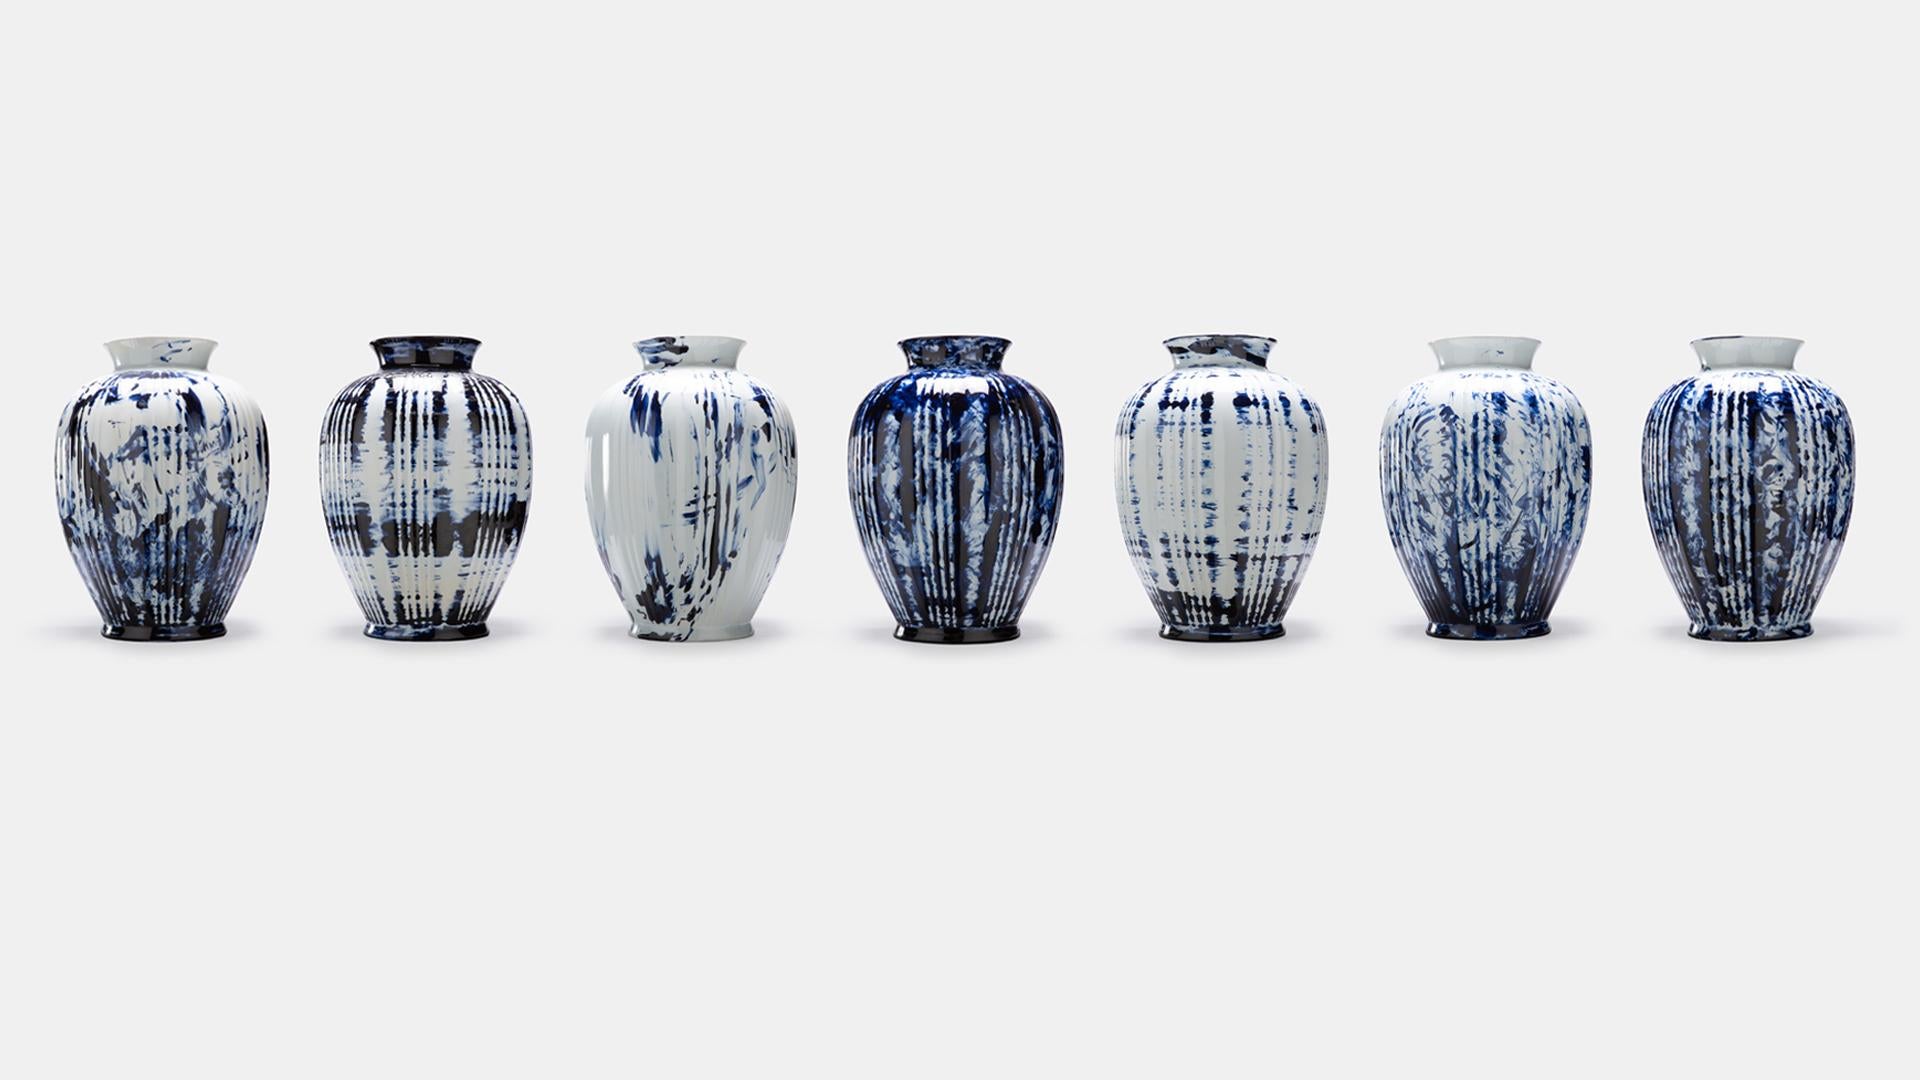 One minute delft blue - vase big est disponible en tant qu'édition personnelle exclusive, le Label de Marcel portant des œuvres de nature plus personnelle et expérimentale. Les pièces de la série Delft Blue sont uniques et illimitées grâce à la